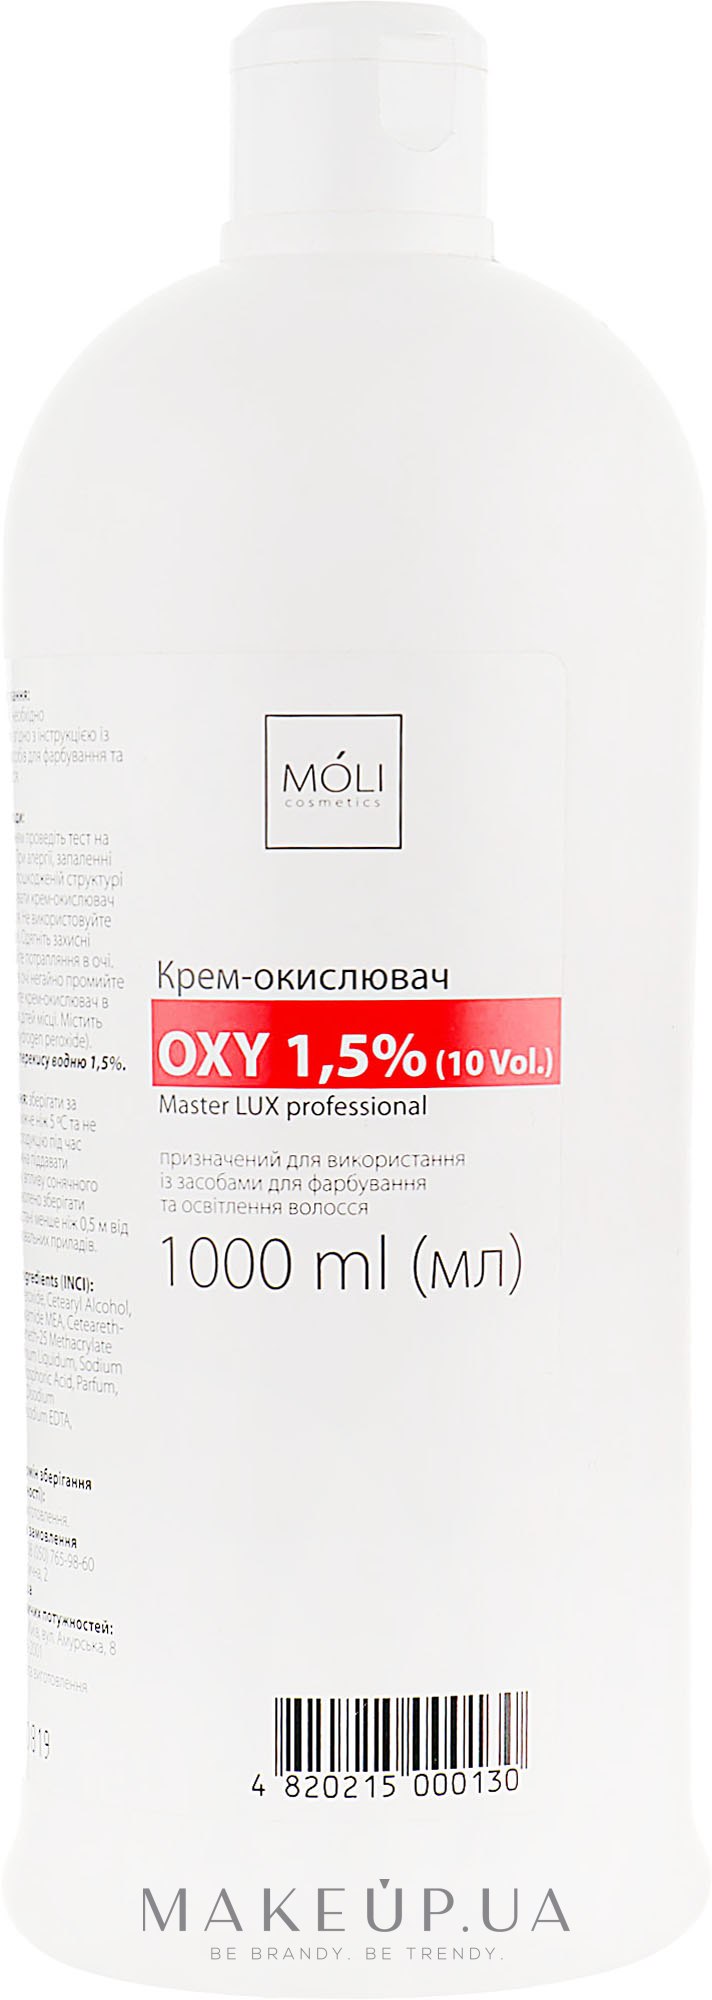 Окислювальна емульсія 1.5% - Moli Cosmetics Oxy 1.5% (10 Vol.) — фото 1000ml